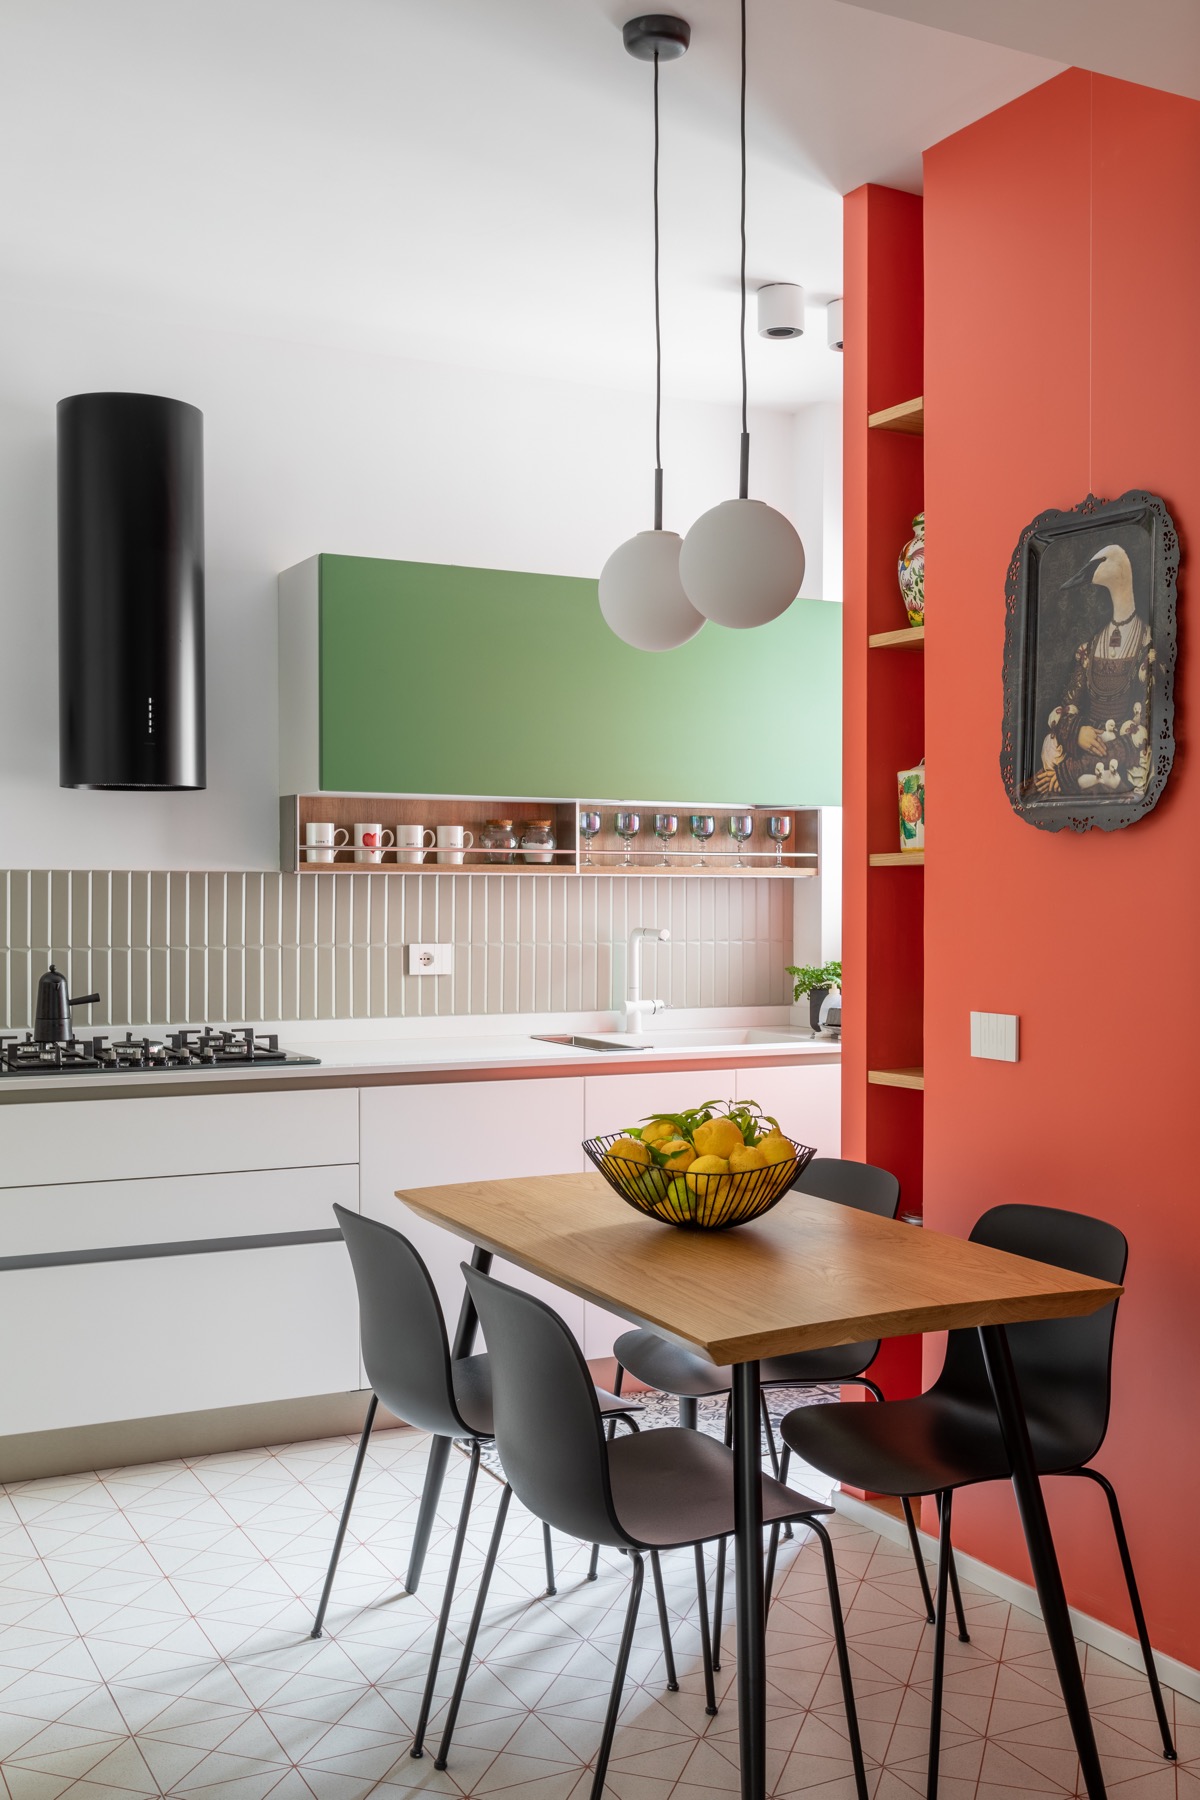 Tác phẩm nghệ thuật trừu tượng tạo thêm nét đặc trưng cho bức tường bếp màu đỏ.